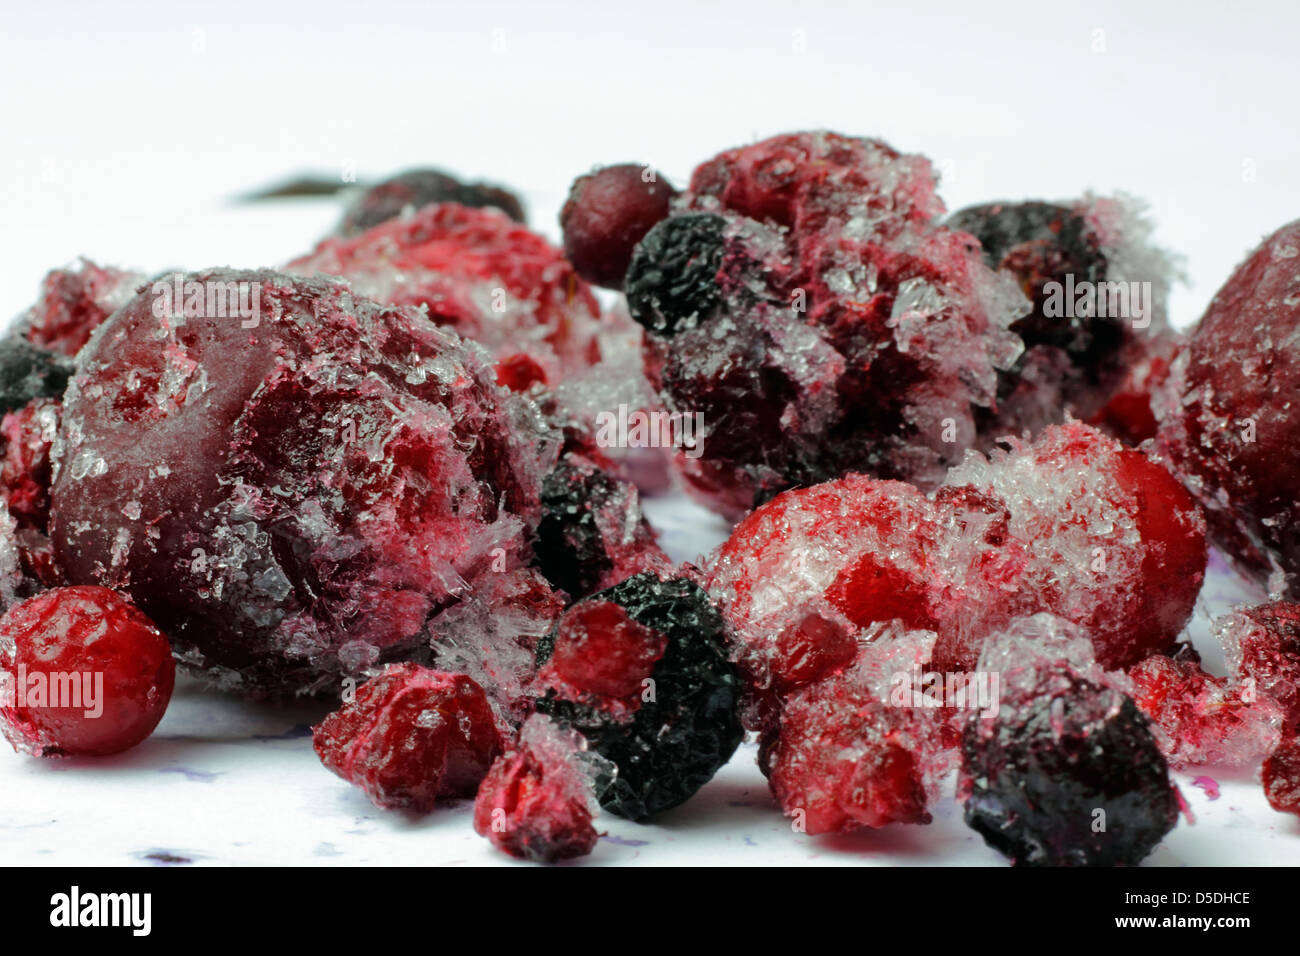 frozen wild berries Stock Photo